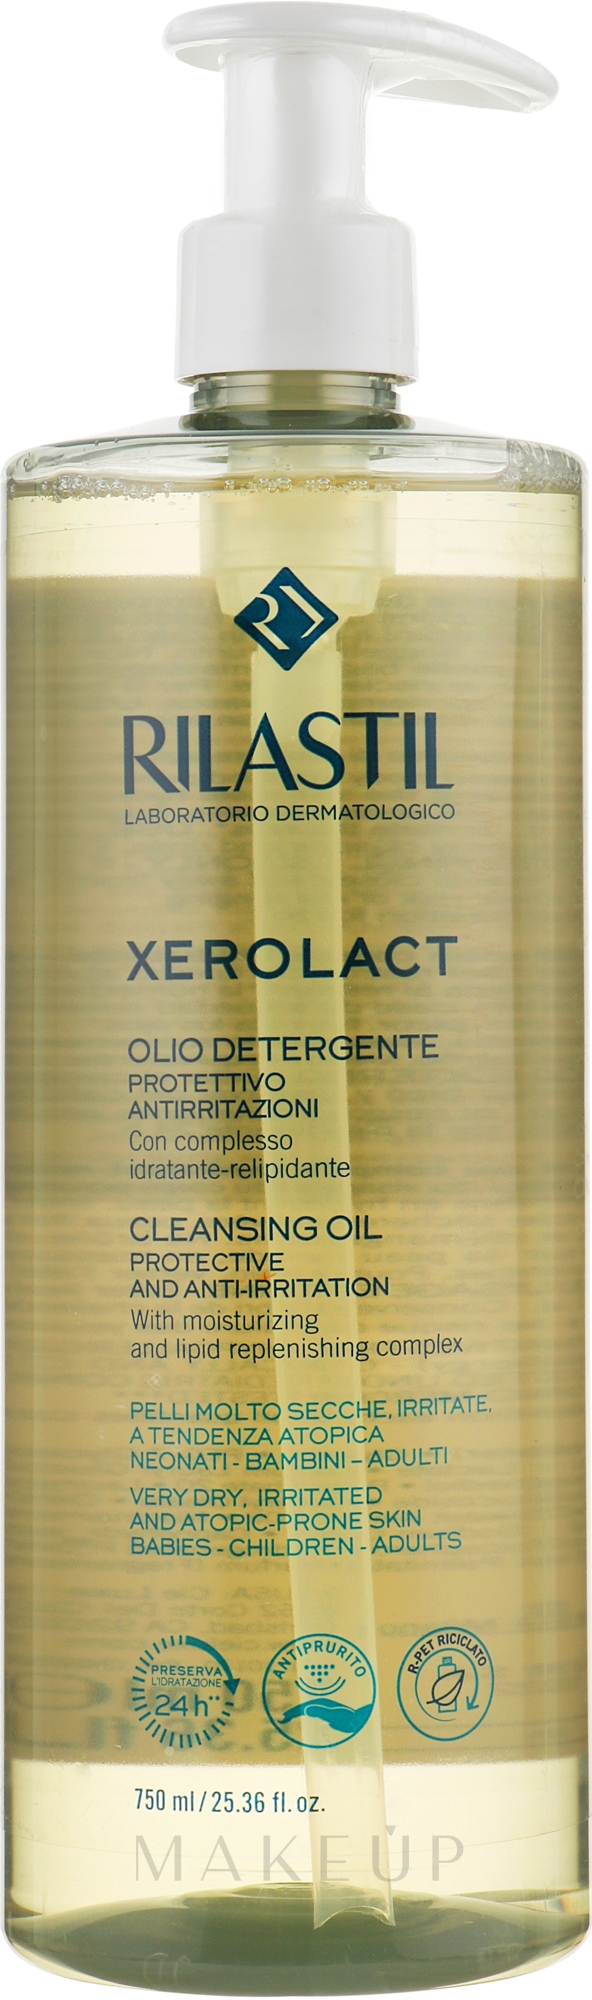 Reinigungsöl für Gesicht und Körper für sehr trockene, gereizte und atopische Haut - Rilastil Xerolact Cleansing Oil — Bild 750 ml